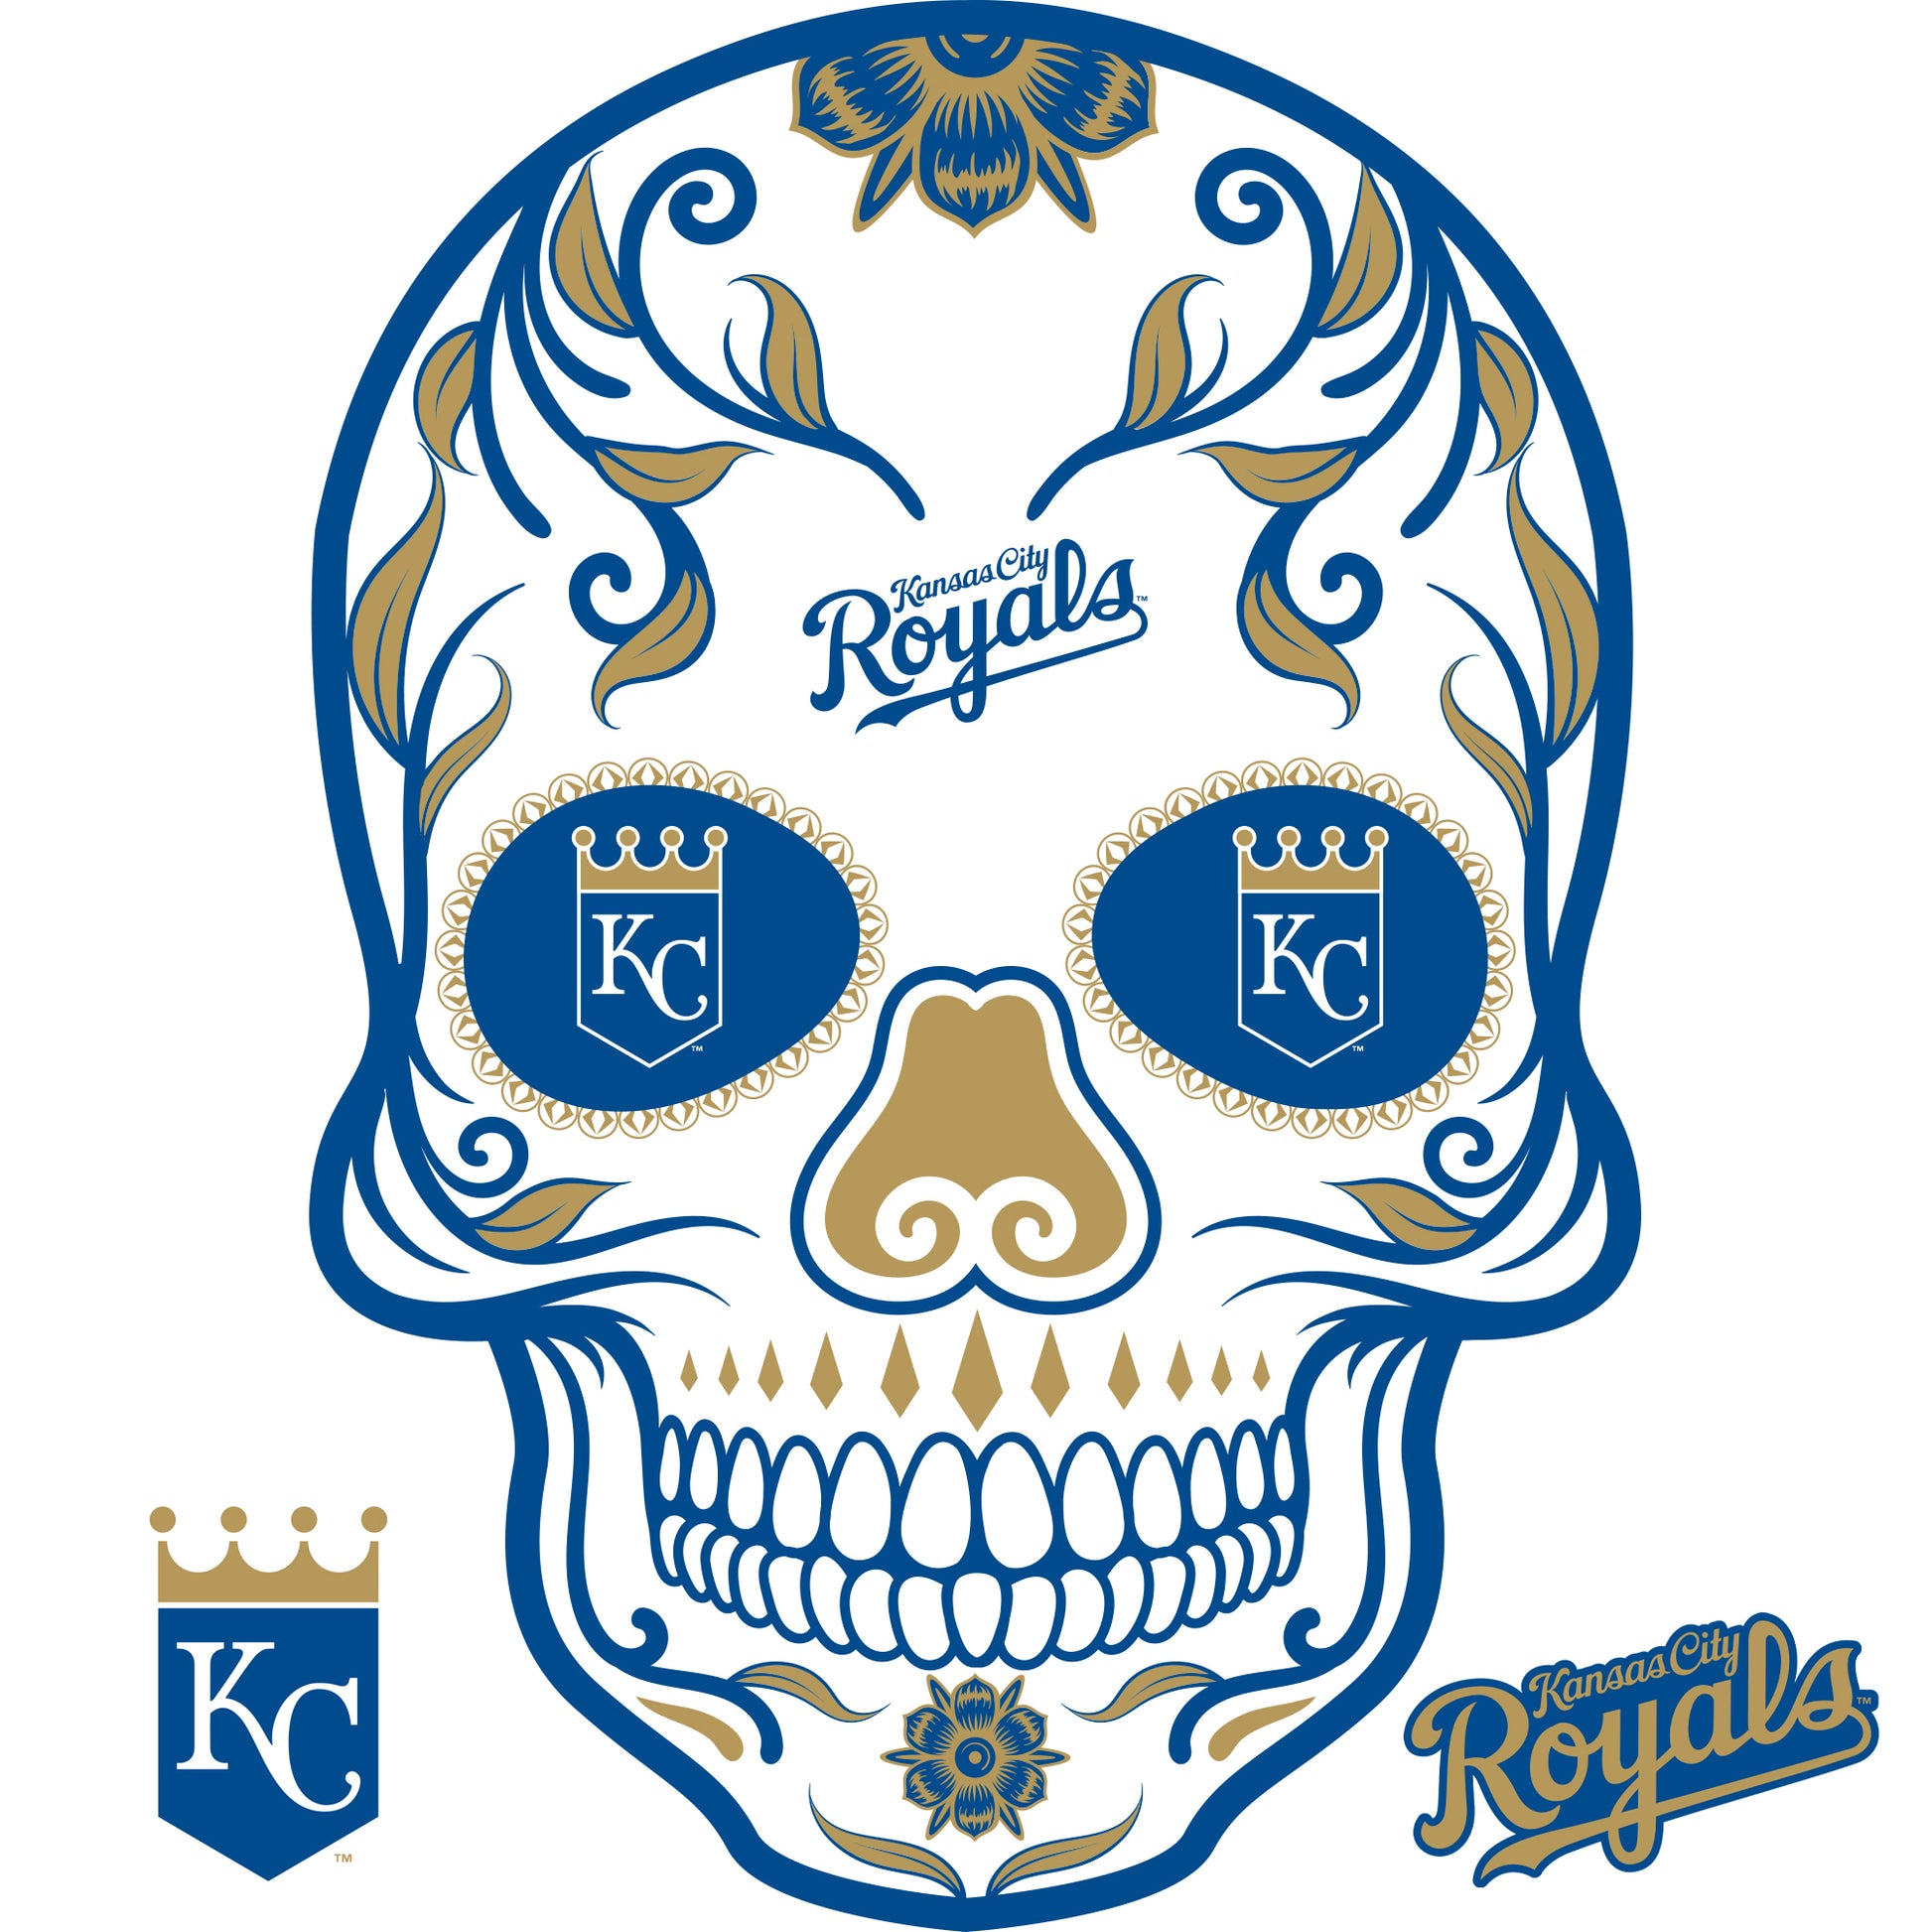 Kansas City Royals Holiday Gift Guide